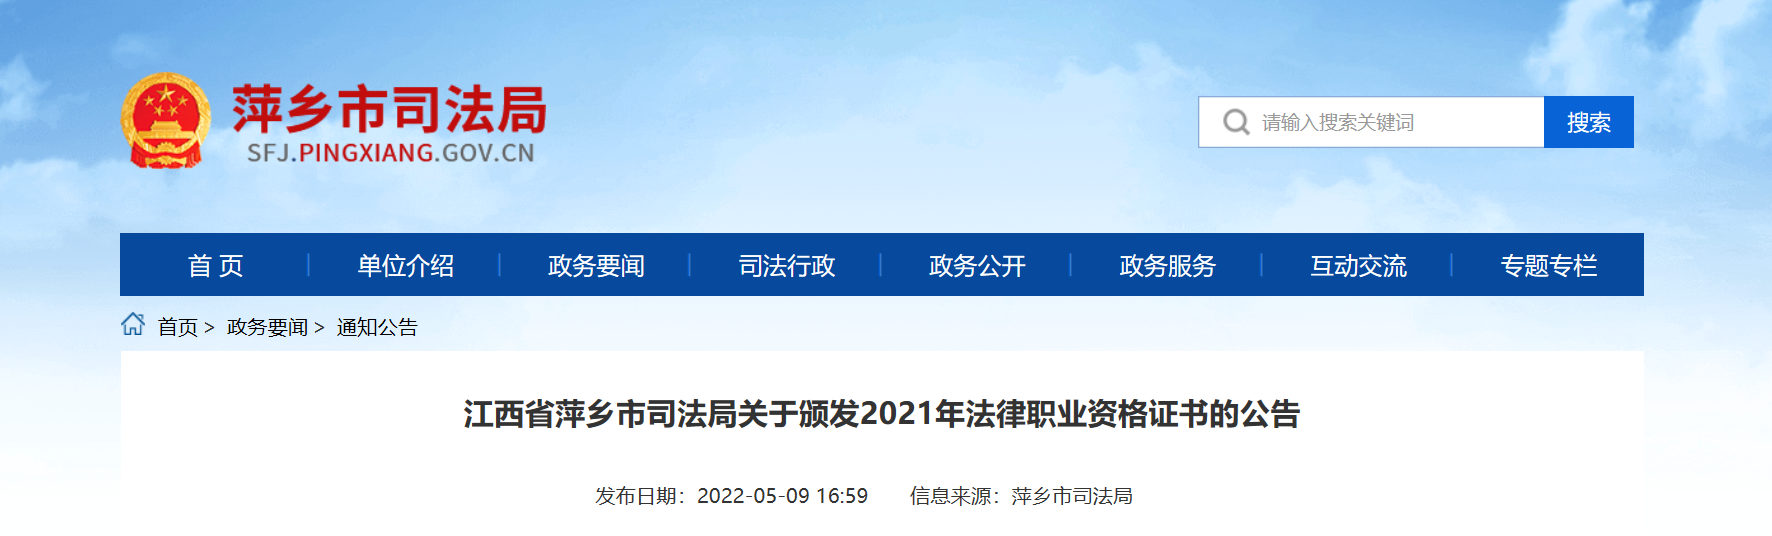 江西萍乡关于颁发2021年法律职业资格证书的公告